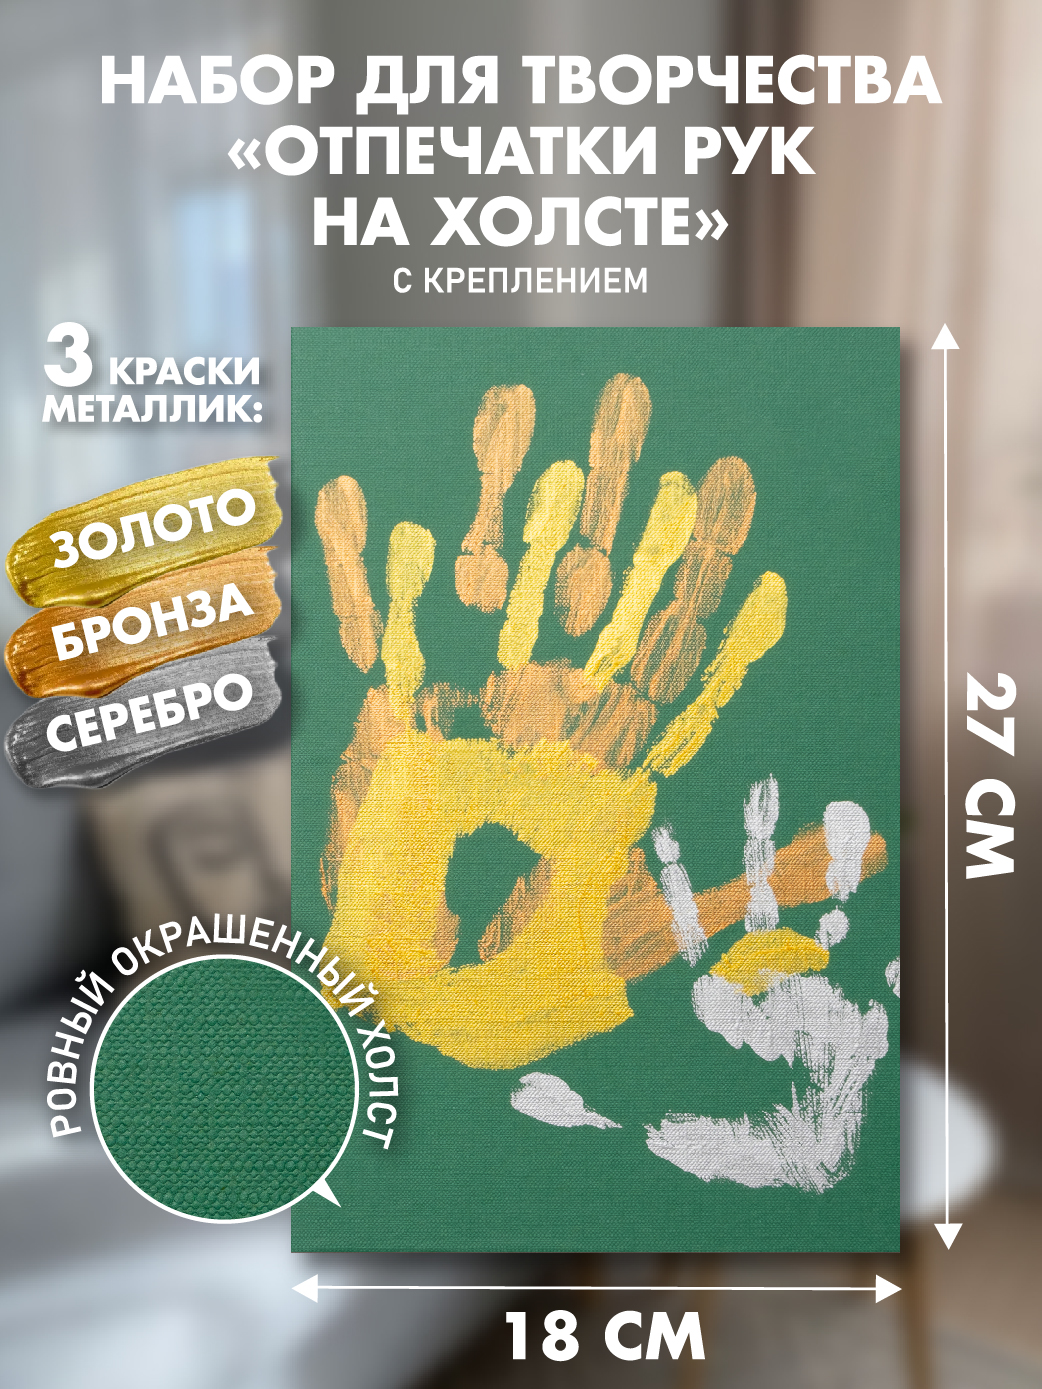 Набор для творчества PixSmart Отпечаток рук на холсте Зеленый - фото 2